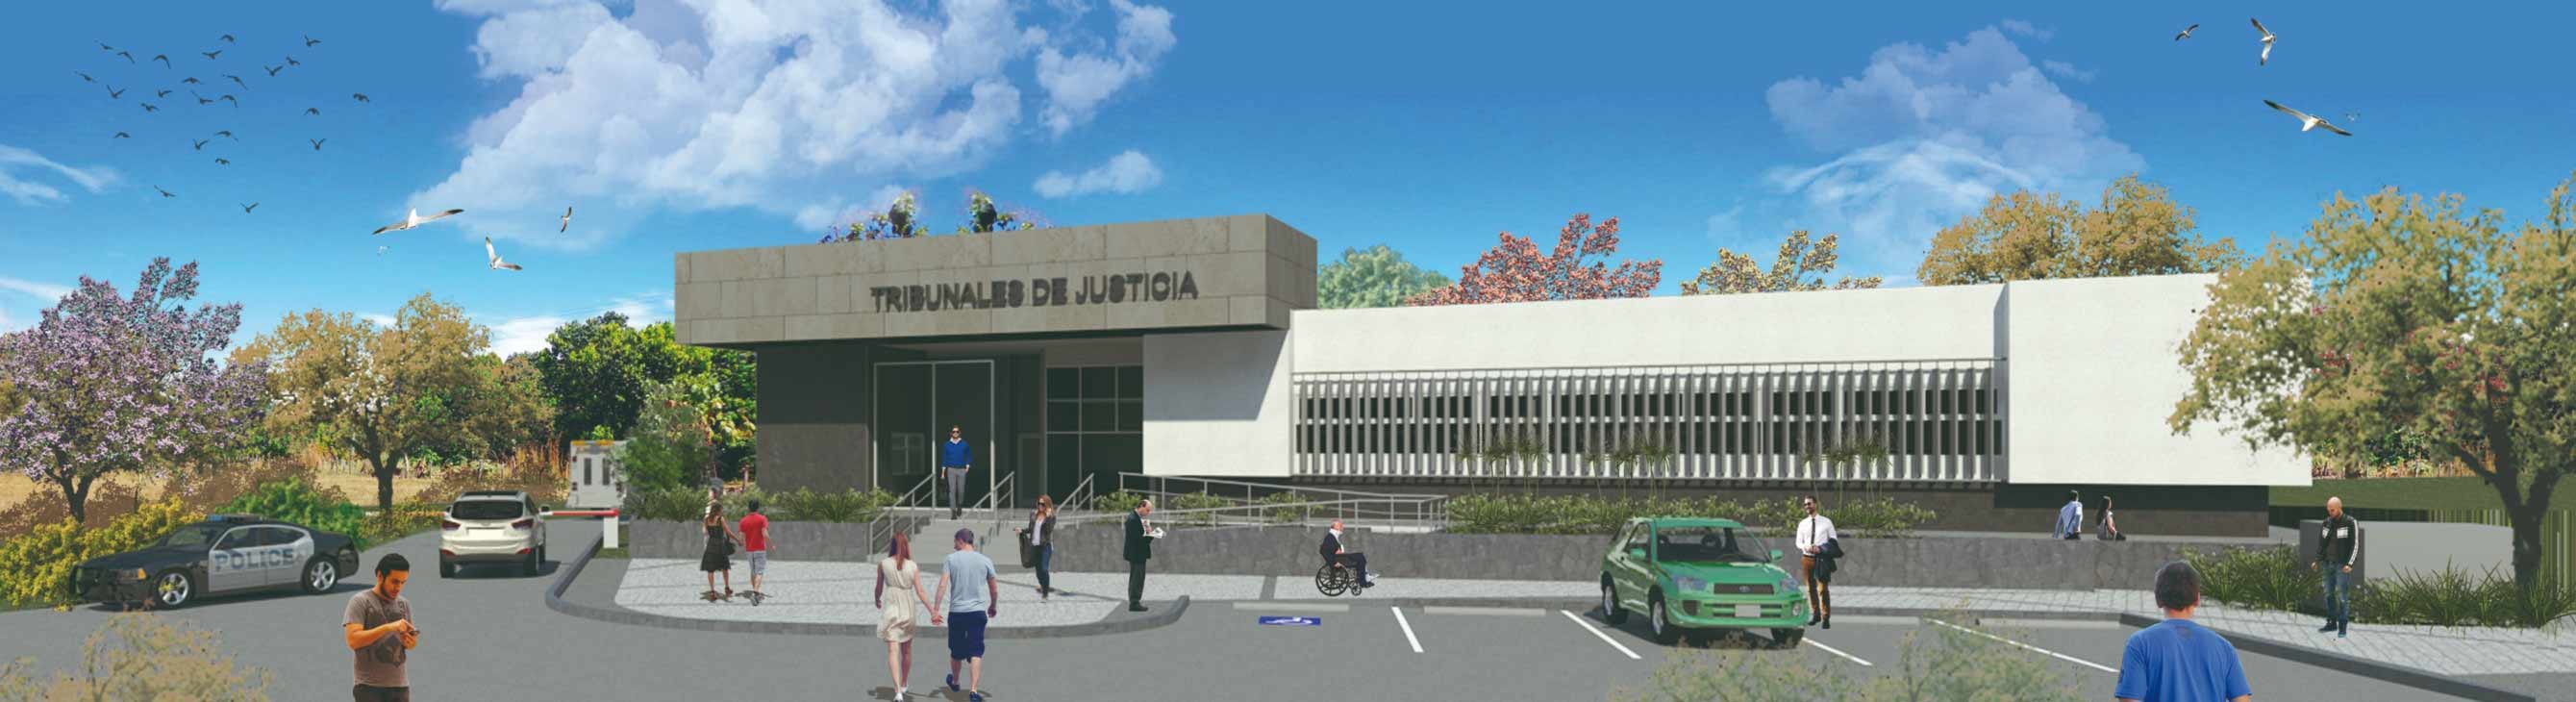 Tribunales de Justicia de Jicaral